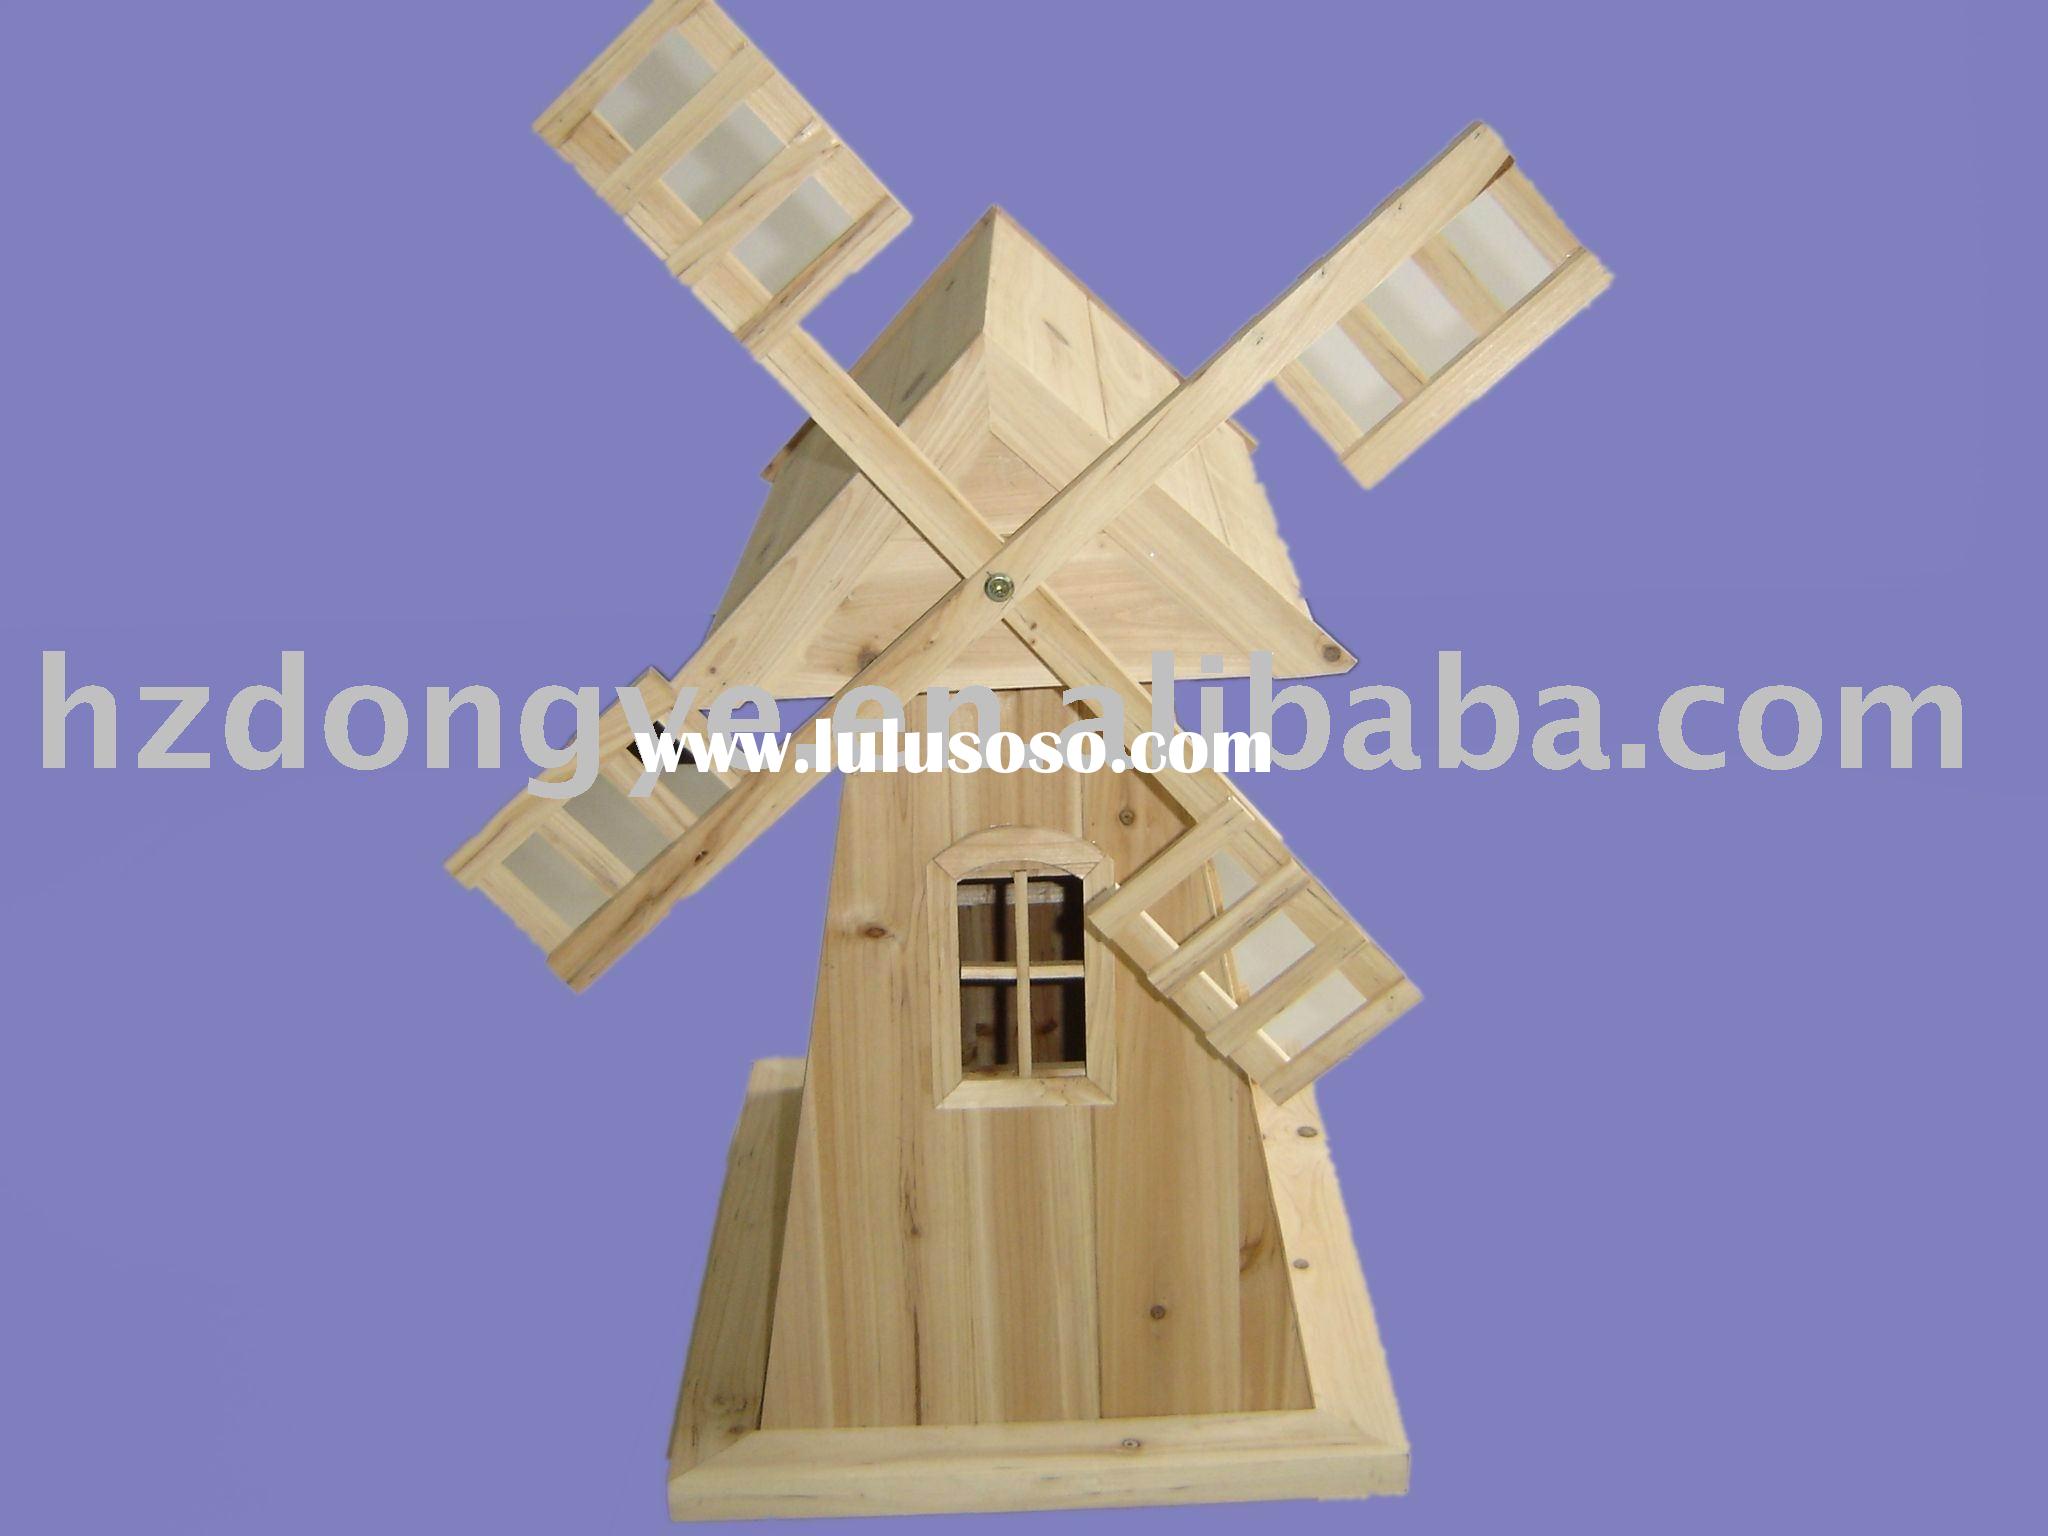 Wooden Garden Windmill Plans